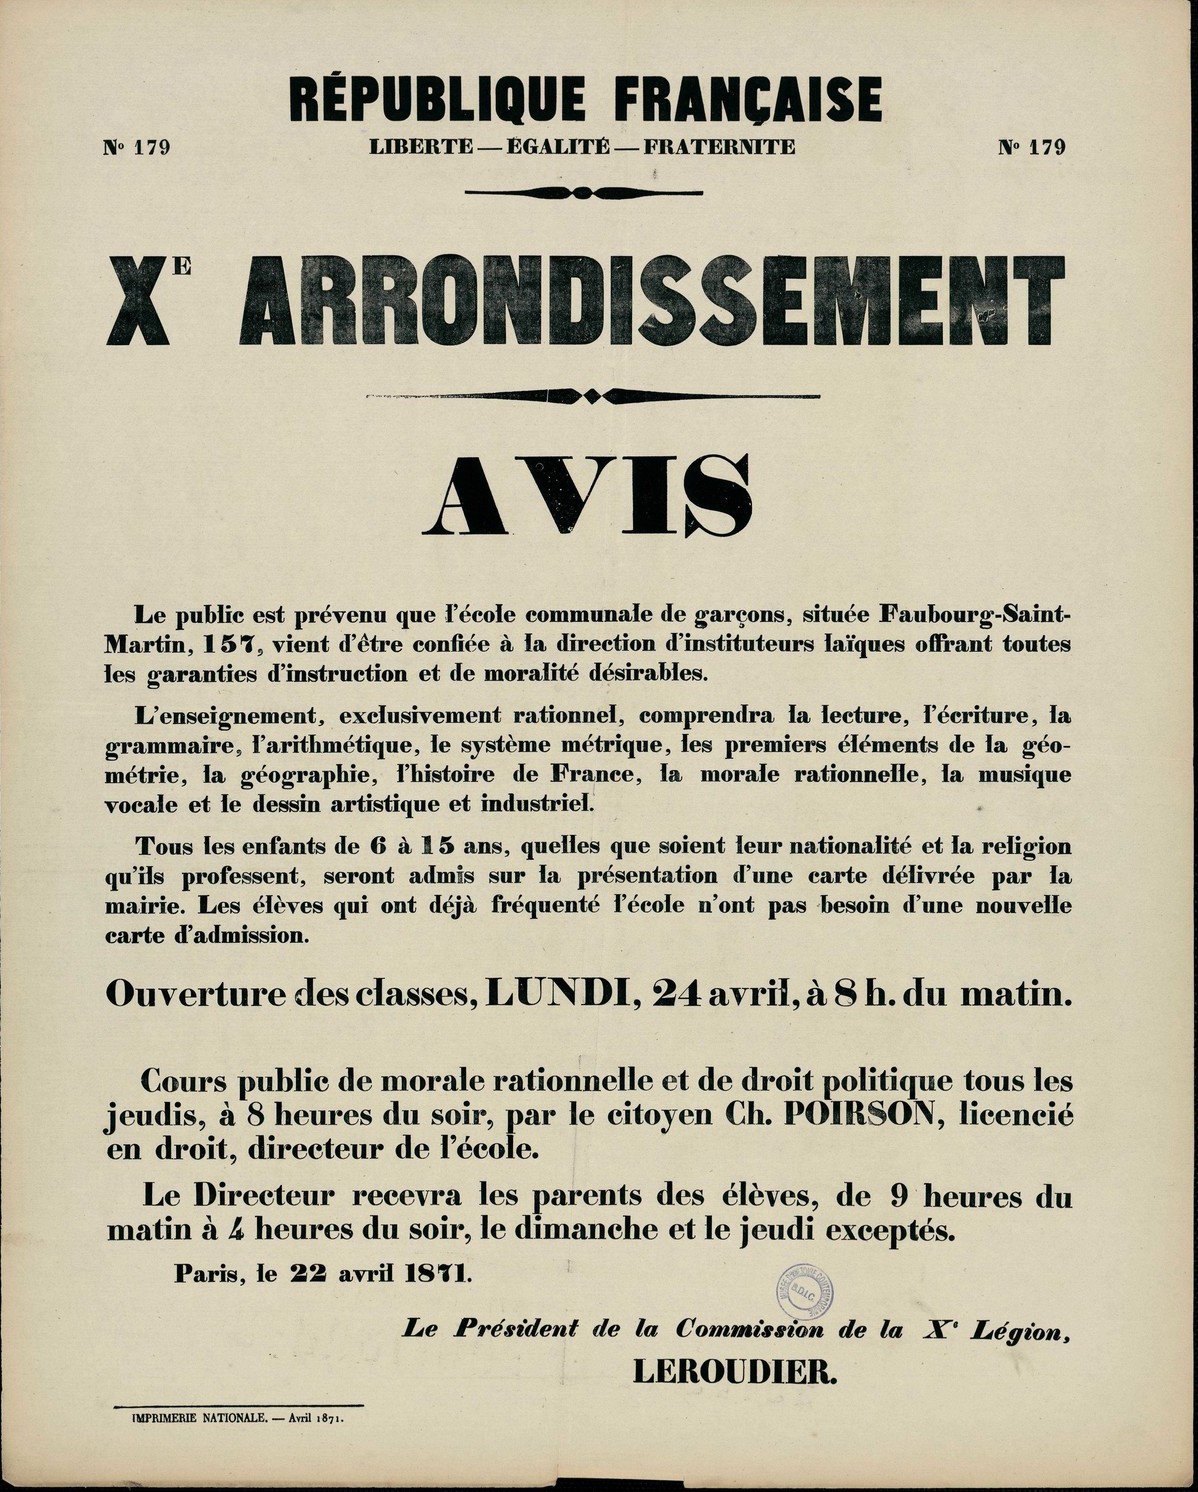 Affiche de La Commune de Paris N° 179 du 22 avril 1871 - Paris 10ème avis au public des écoles (Source : argonnaute.parisnanterre.fr)